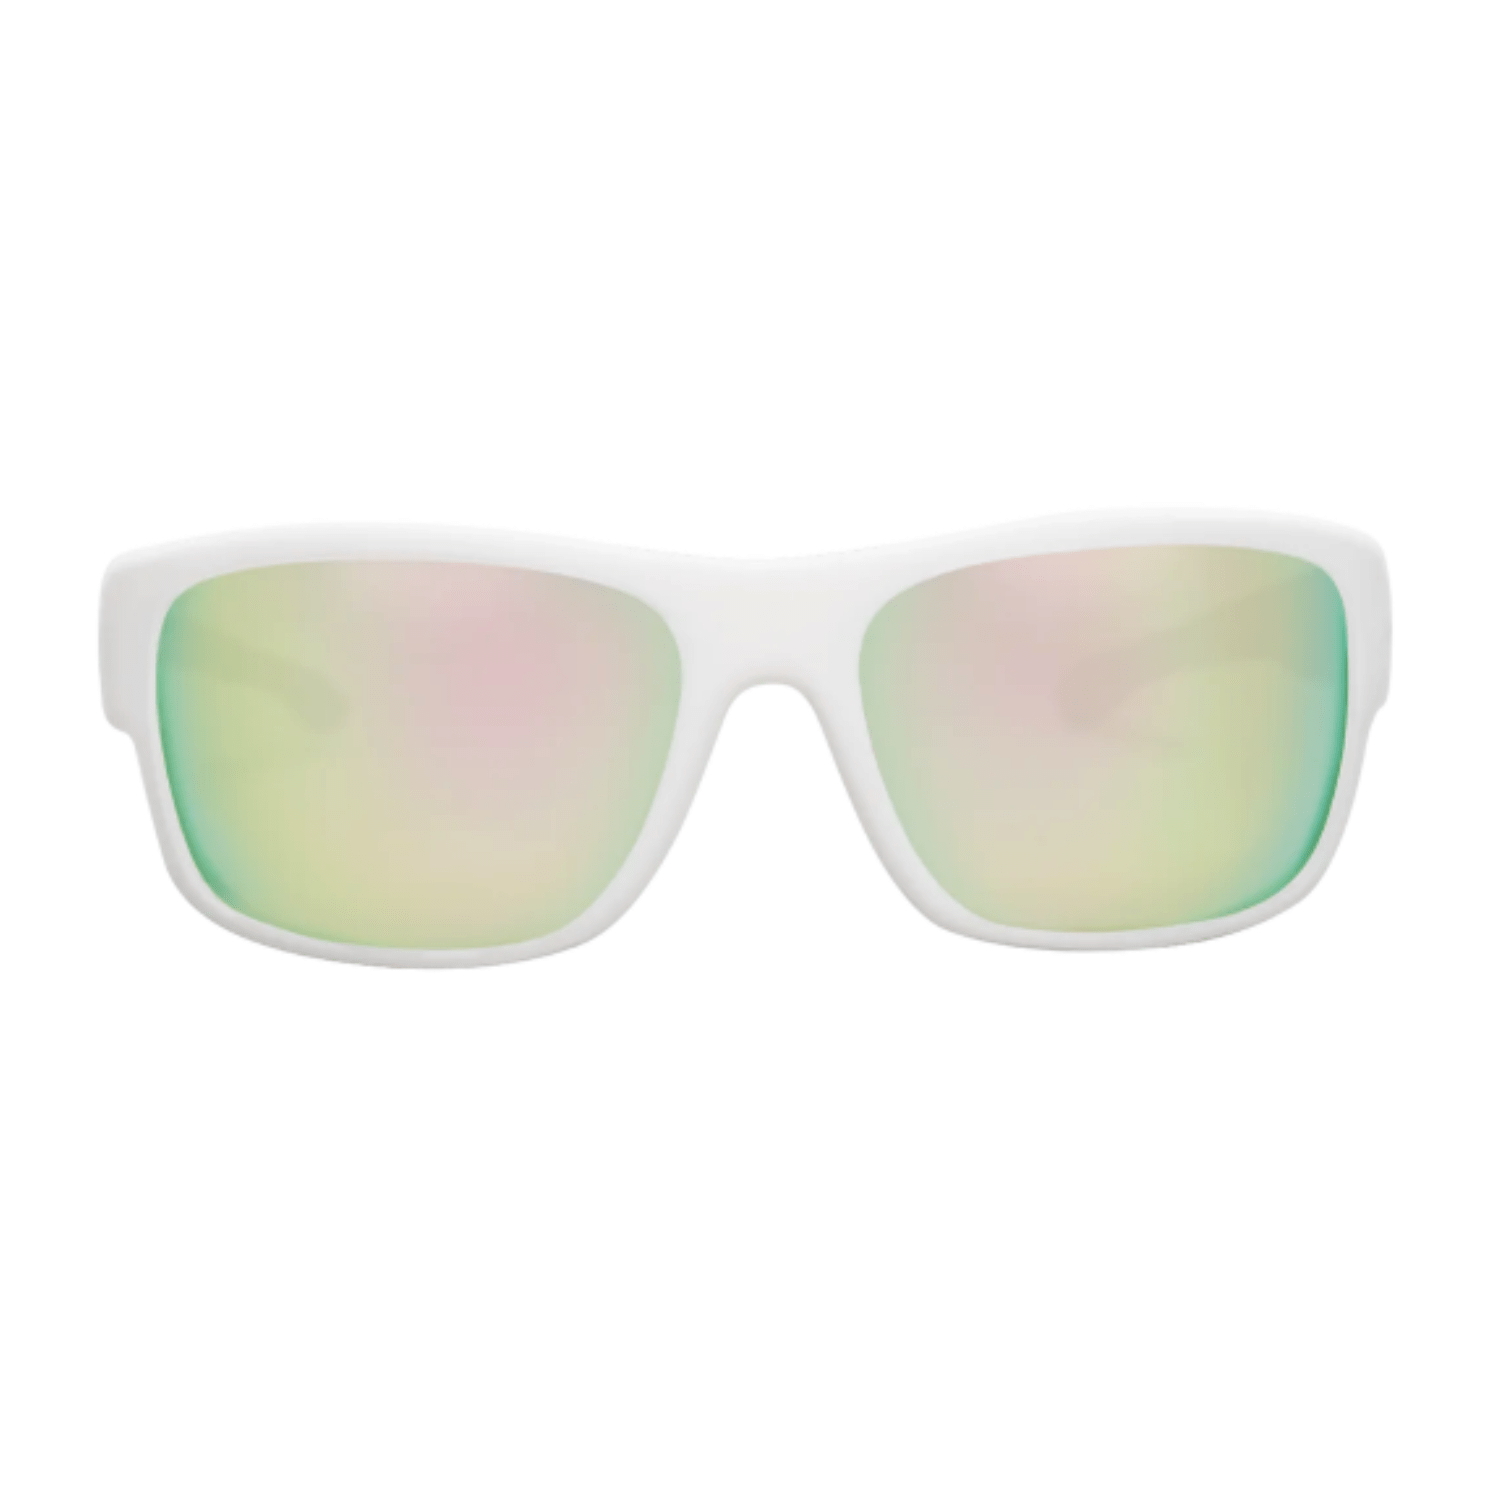 Aztron Avatar X1 Floating Sunglasses (Polarized)-Polarized Sunglasses-Aztron Sports-2